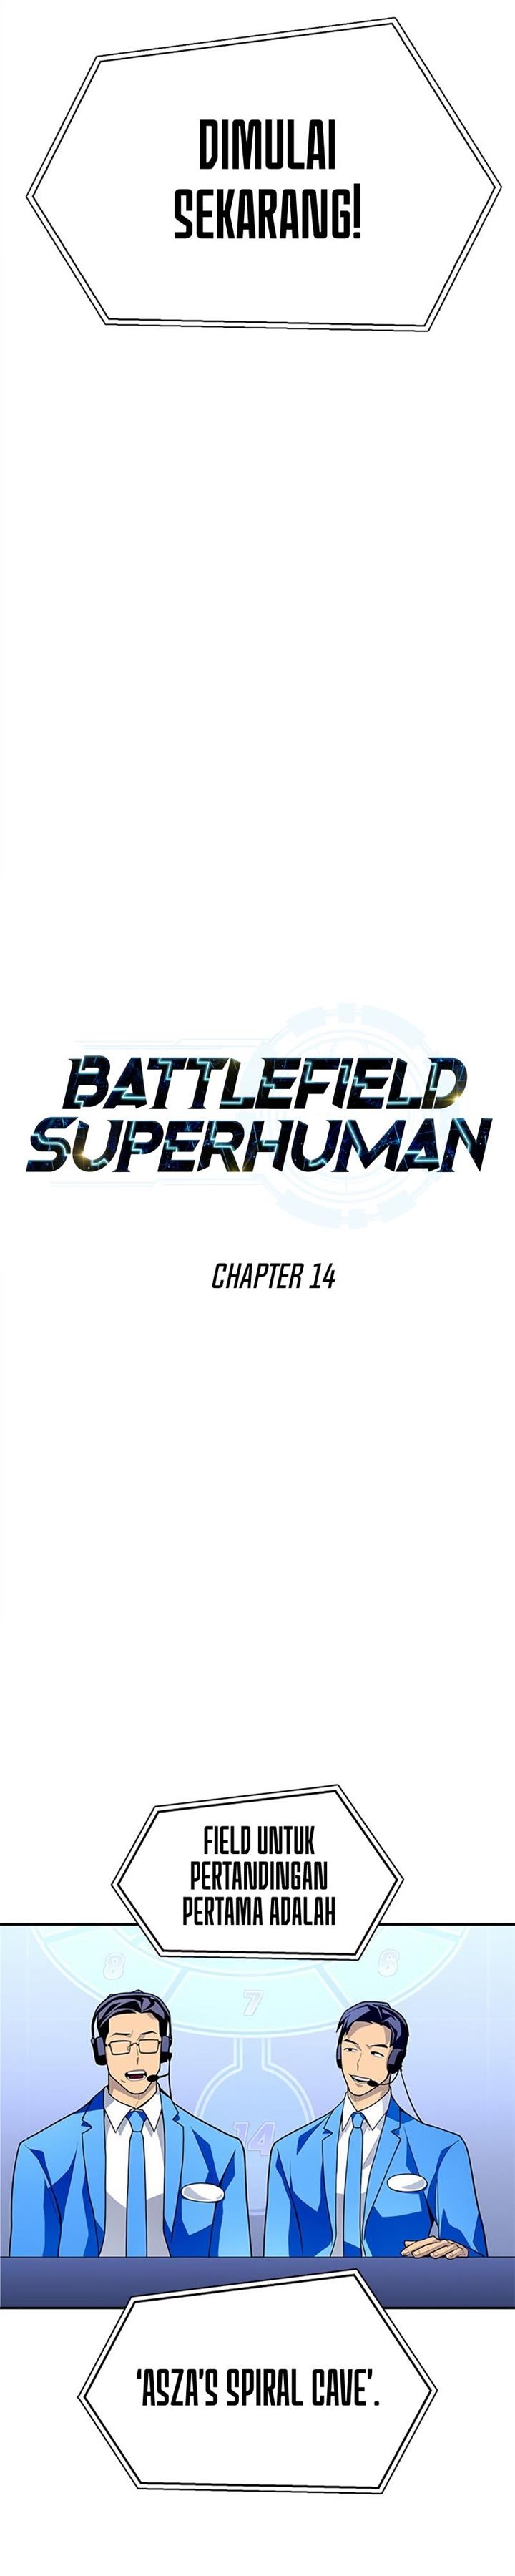 Superhuman Battlefield Chapter 14